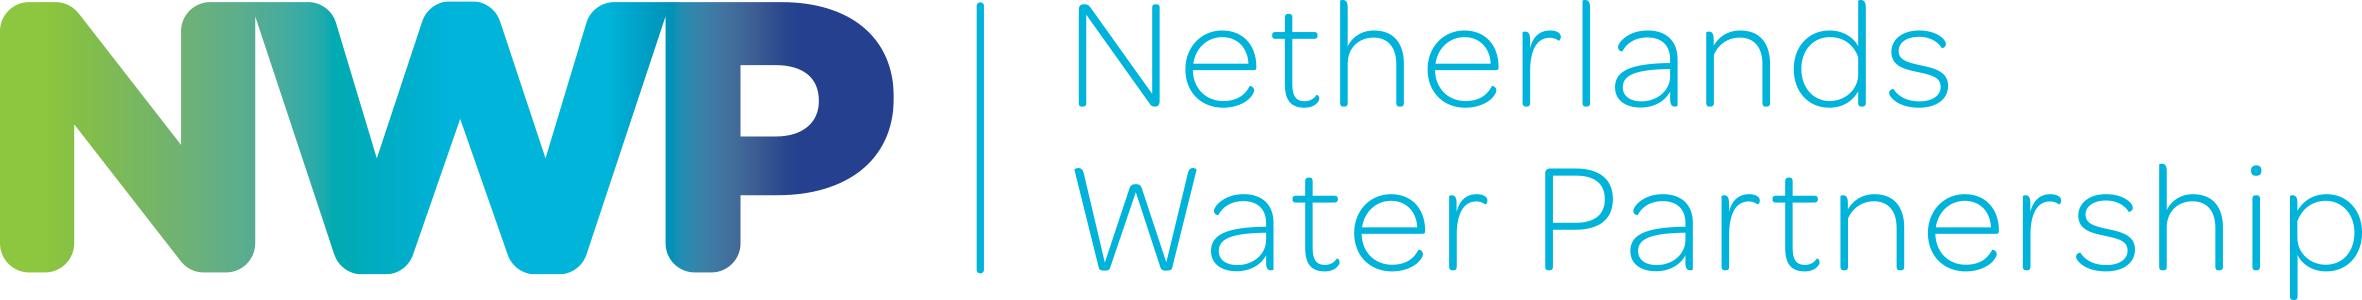 NWP_logo.png